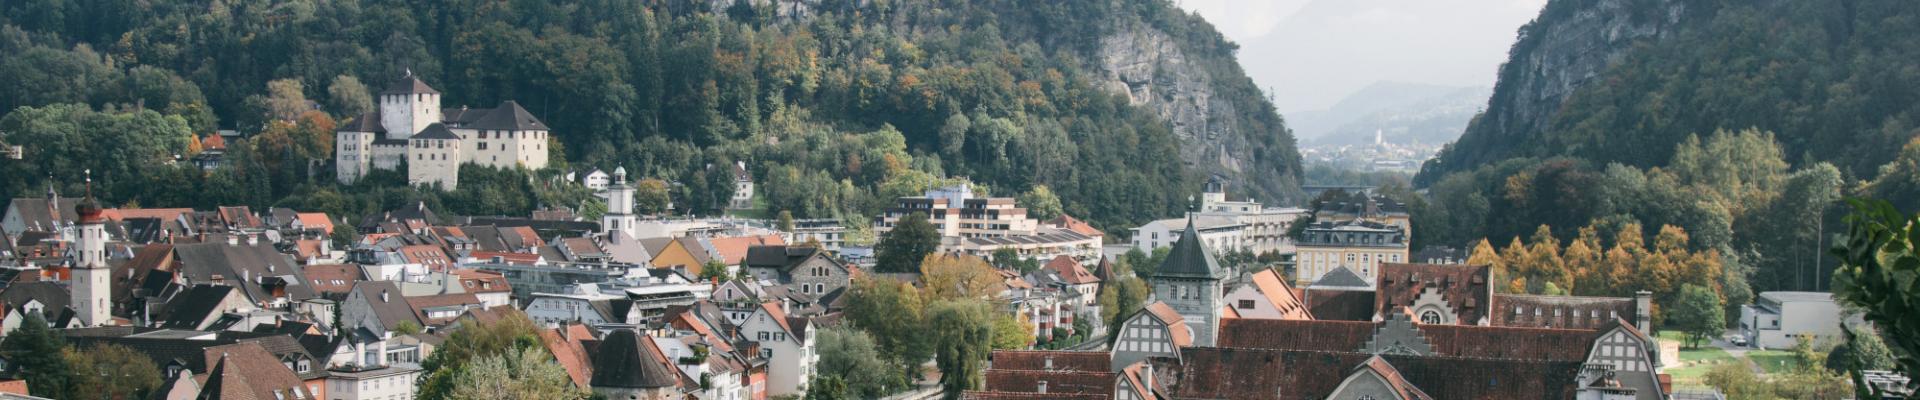 Feldkirch Stadt von Oben